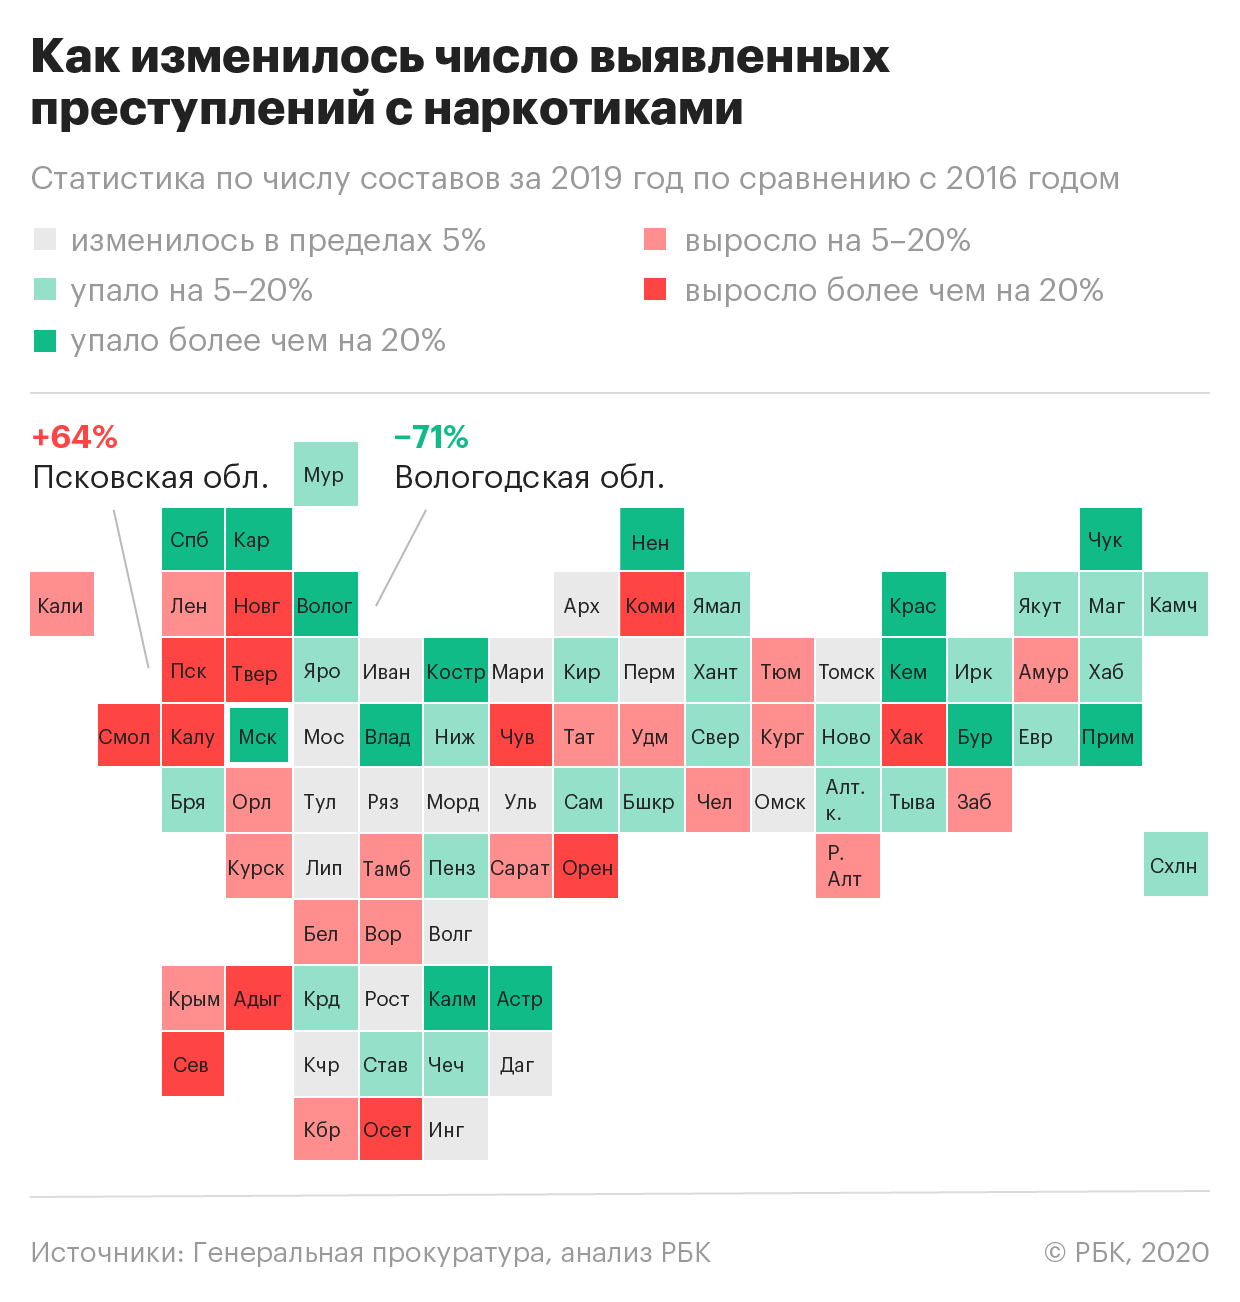 Около половины дел по наркотикам в России не дошло до суда